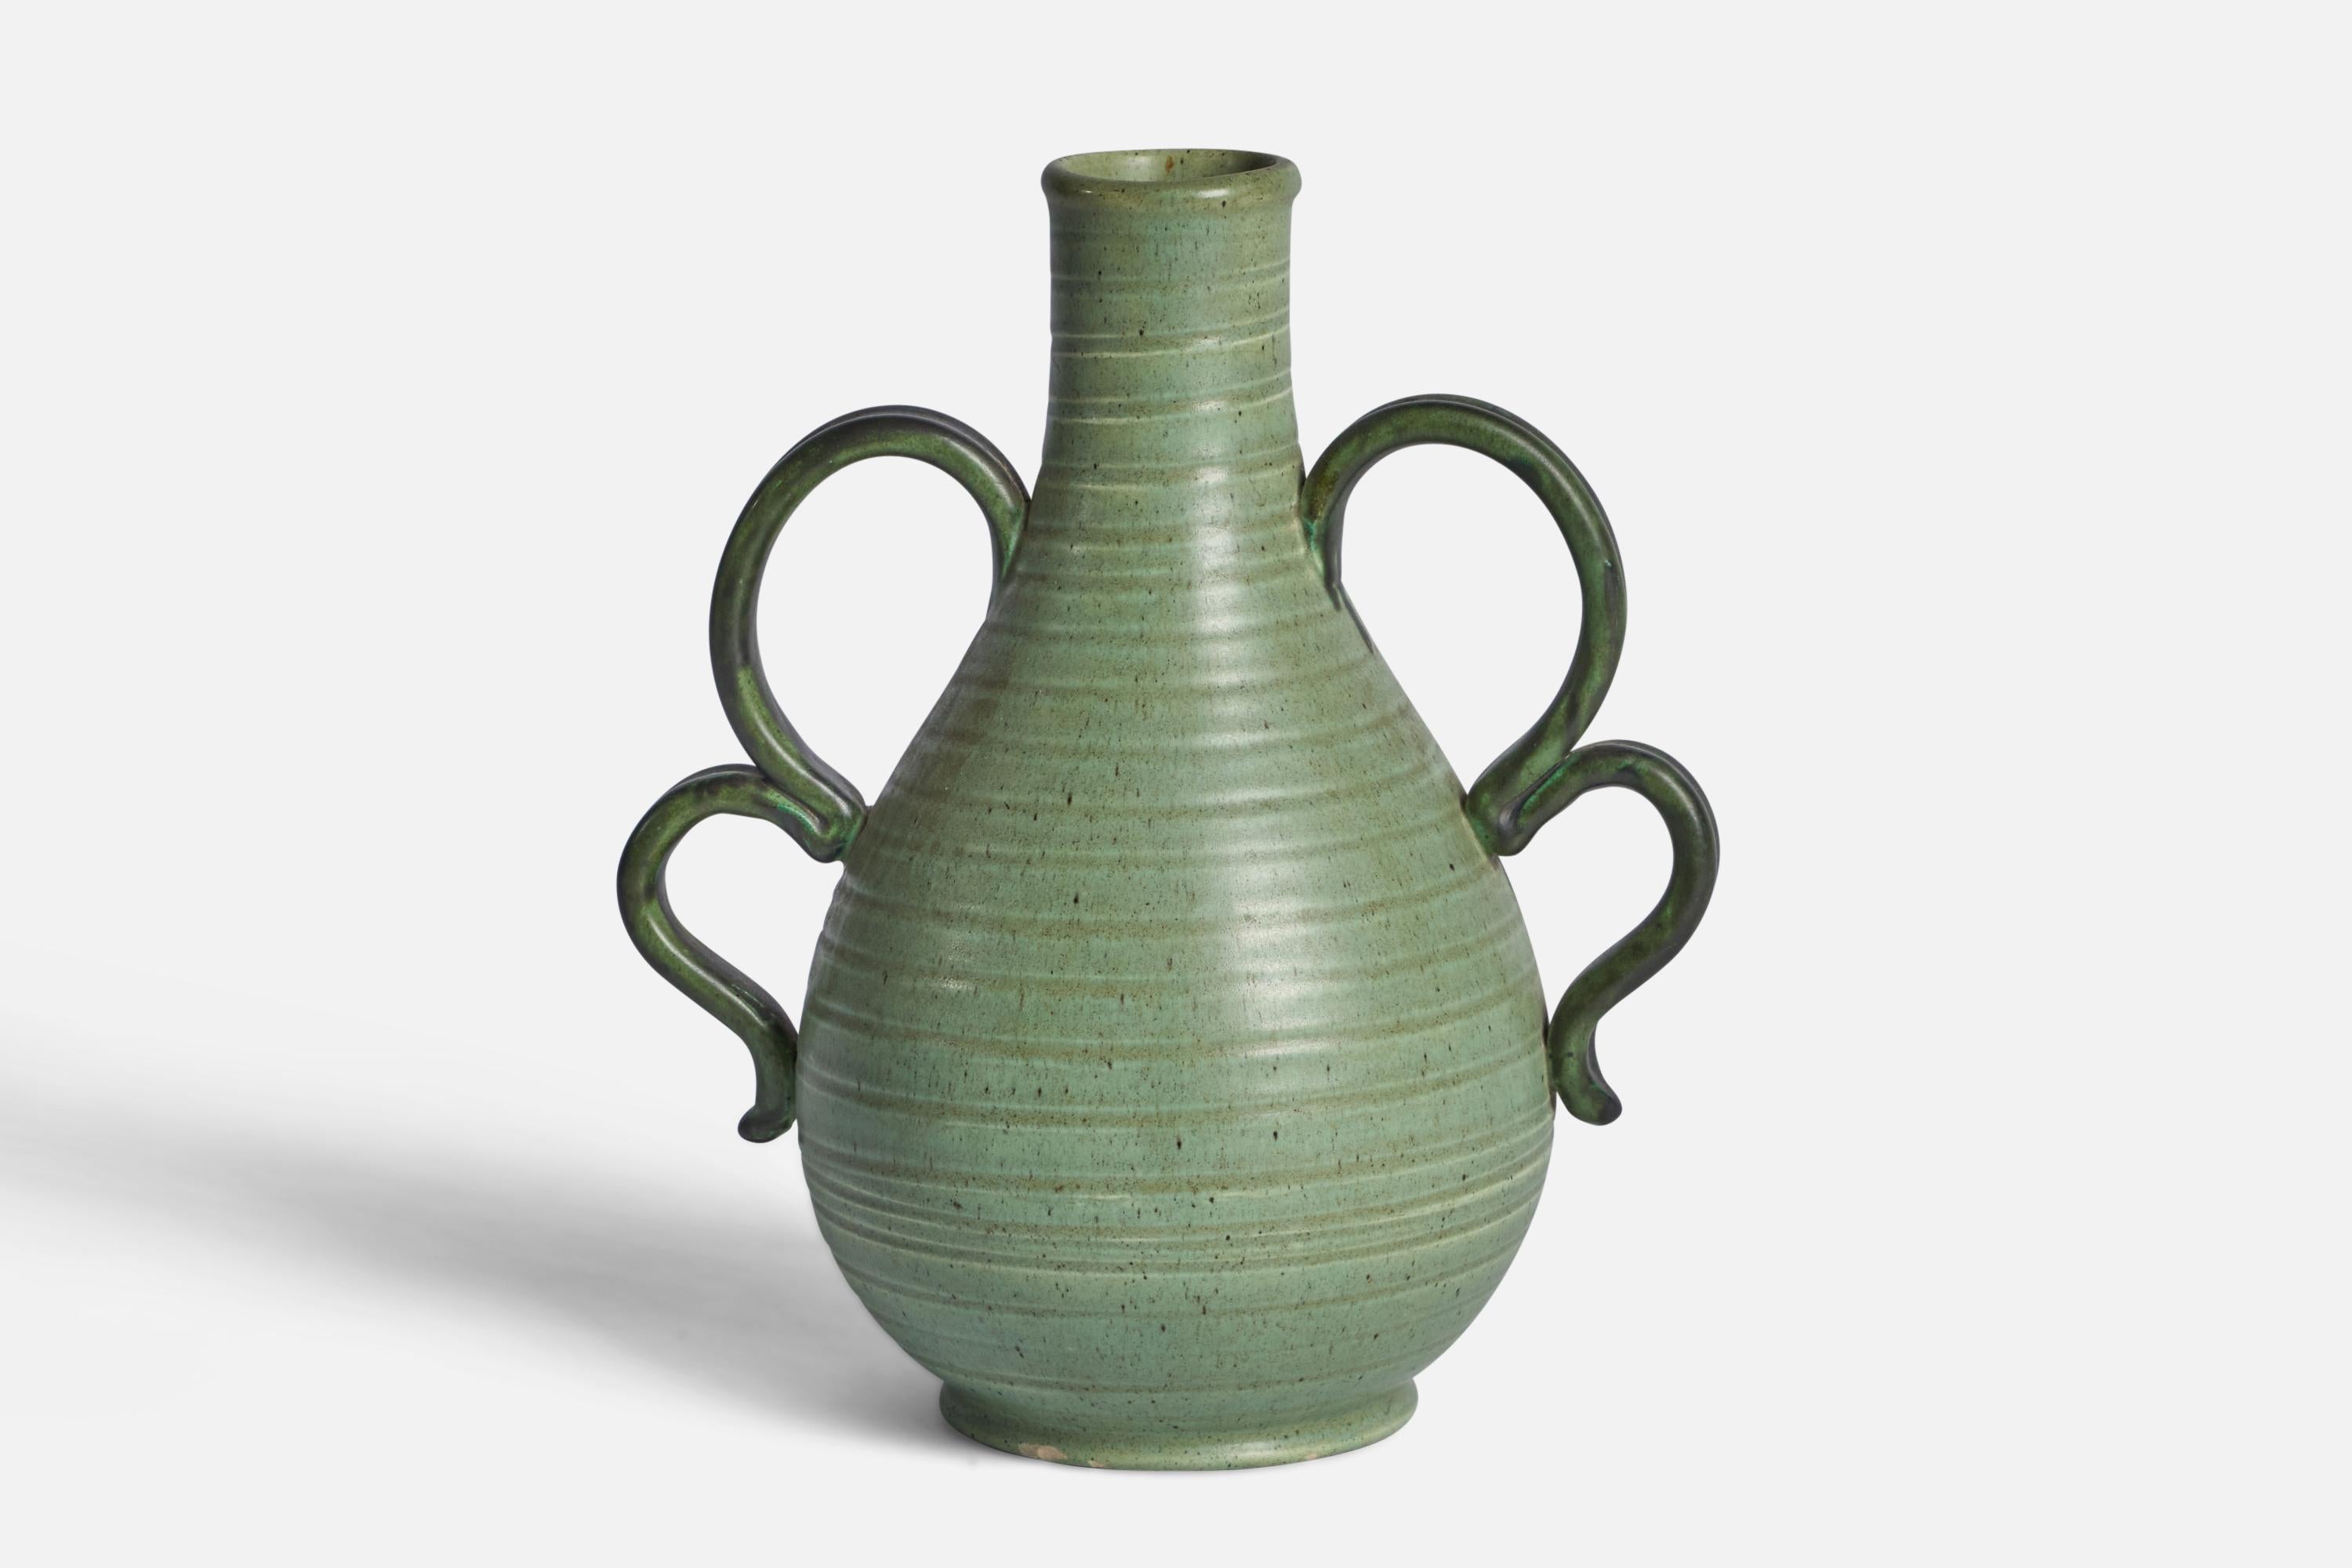 A green-glazed incised earthenware vase designed by Eva-Jancke Björk and produced by Bo Fajans, Sweden, c. 1940s.